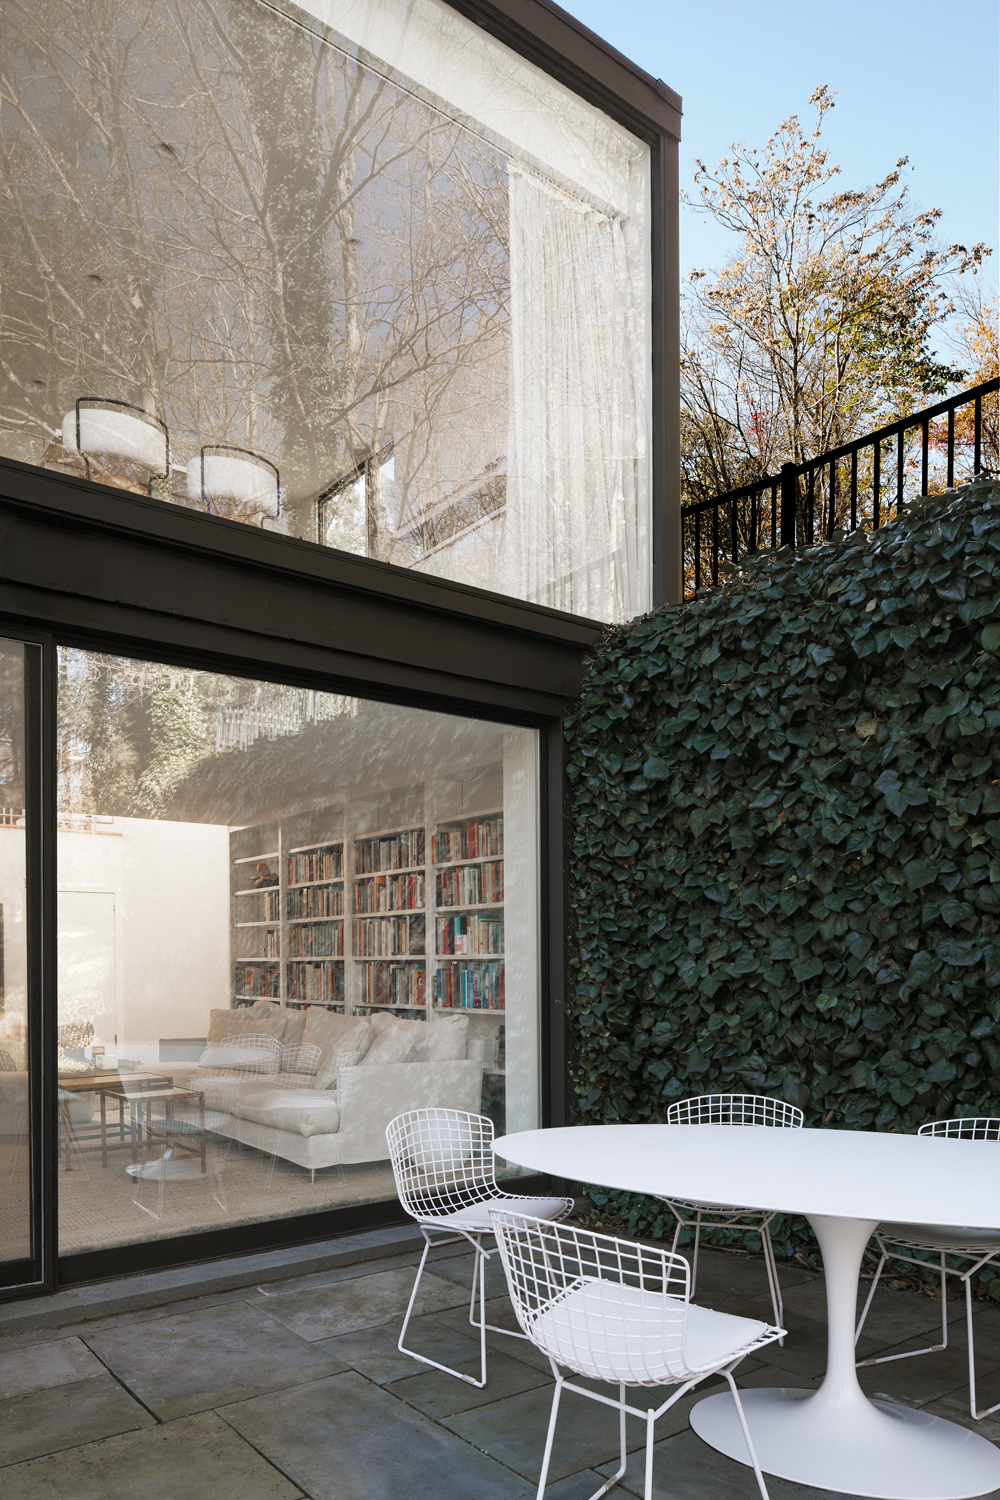 Décor eclético e minimalista ganha protagonismo nesta casa rodeada de vidro